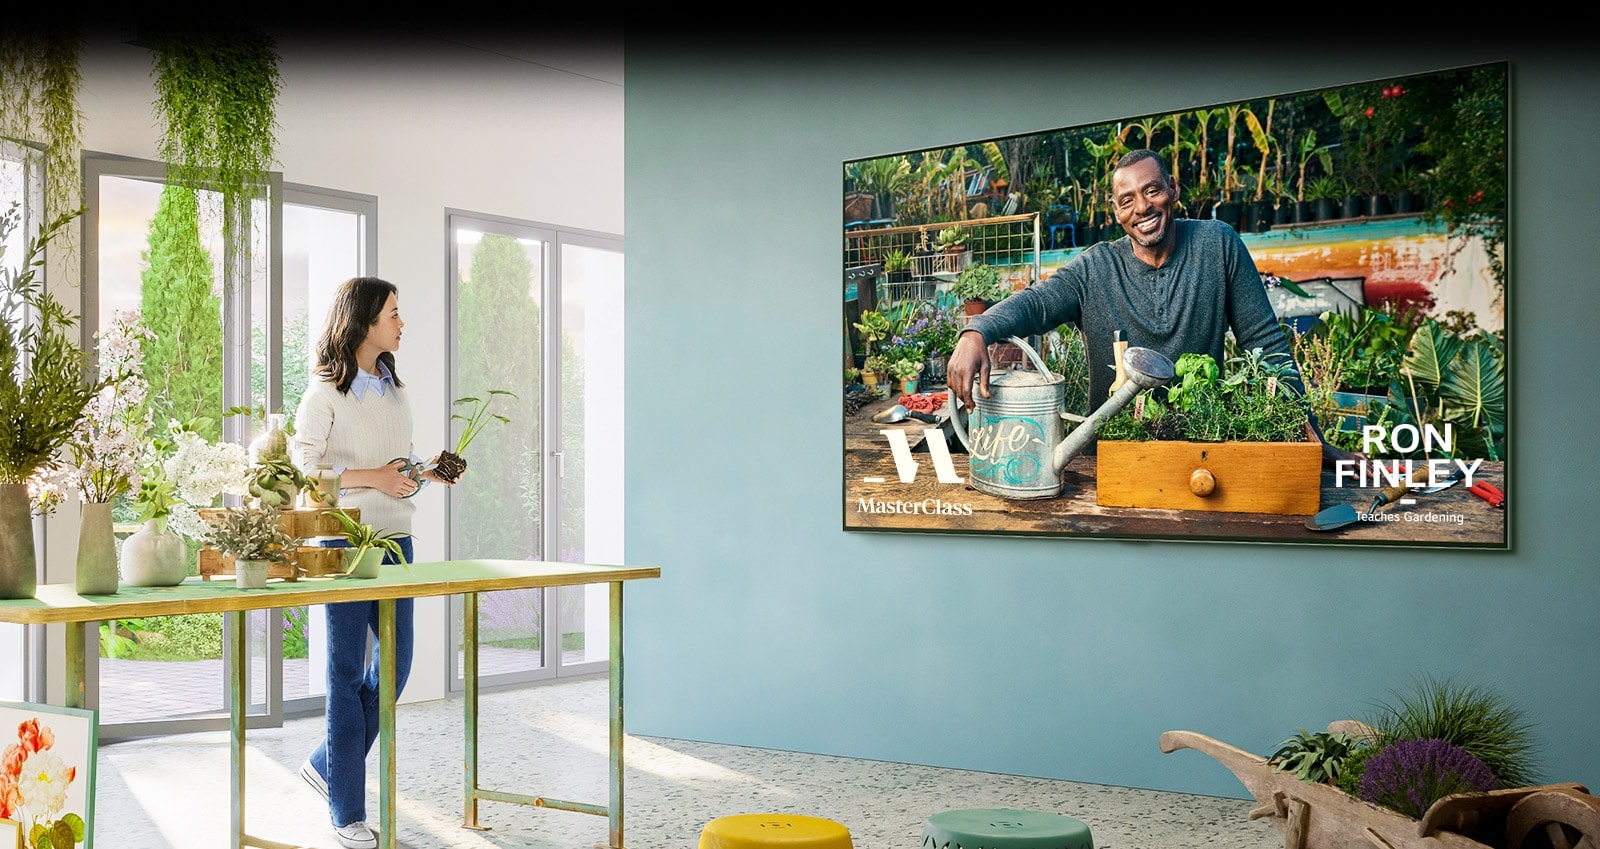  Uma TV grande está na parede e a TV mostra o ecrã da aula de jardinagem de 'Master Class'. Uma mulher está junto a uma mesa ao lado de uma TV e está a assistir a uma aula de jardinagem com vasos de flores e uma tesoura de podar.